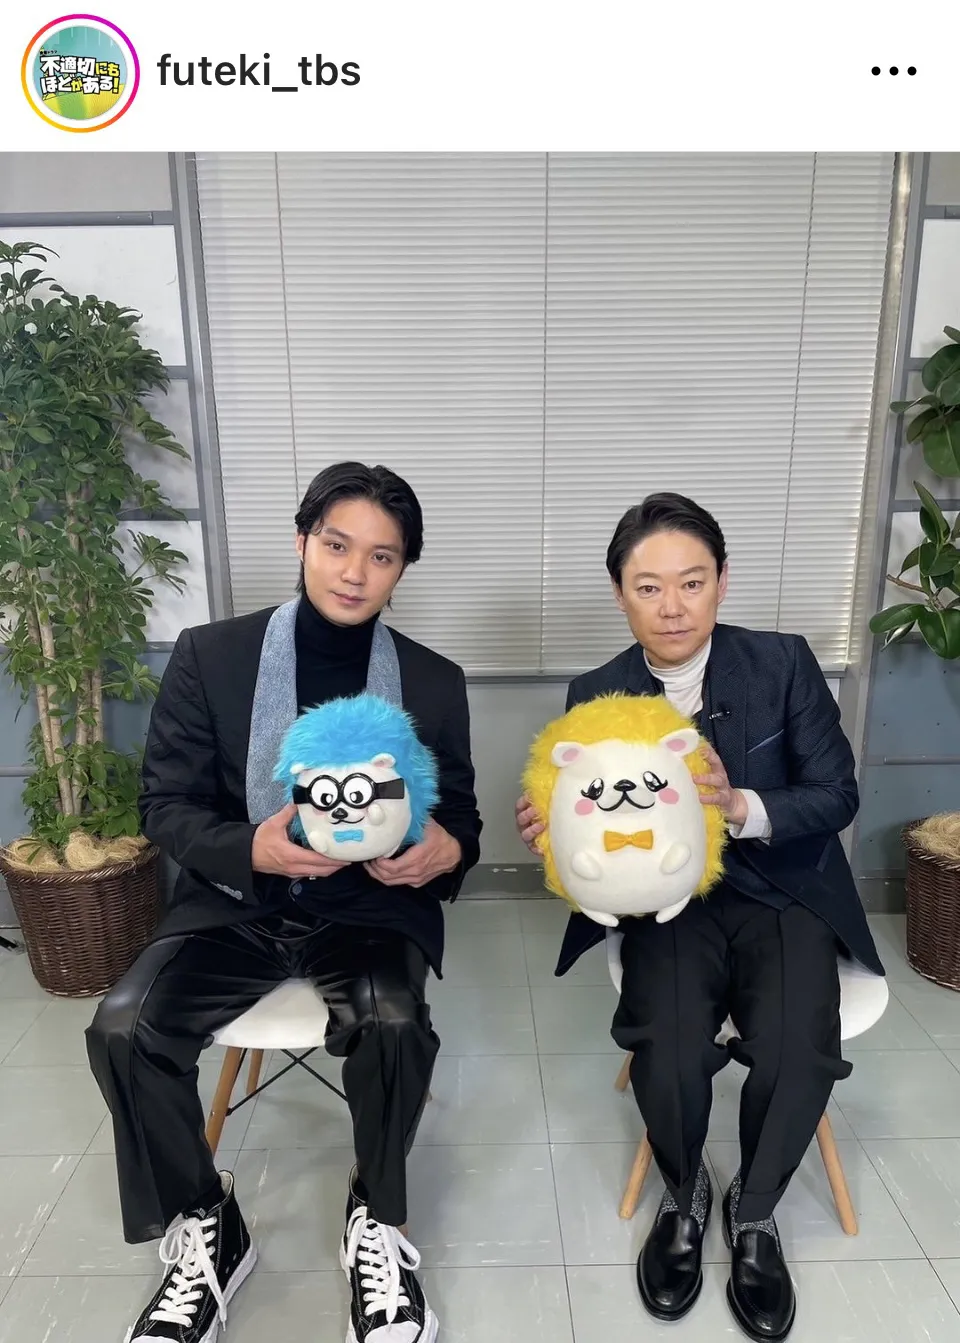 【写真】阿部サダヲと磯村勇斗が「プチブランチ」番組キャラクターを持つ2ショットがかわいい